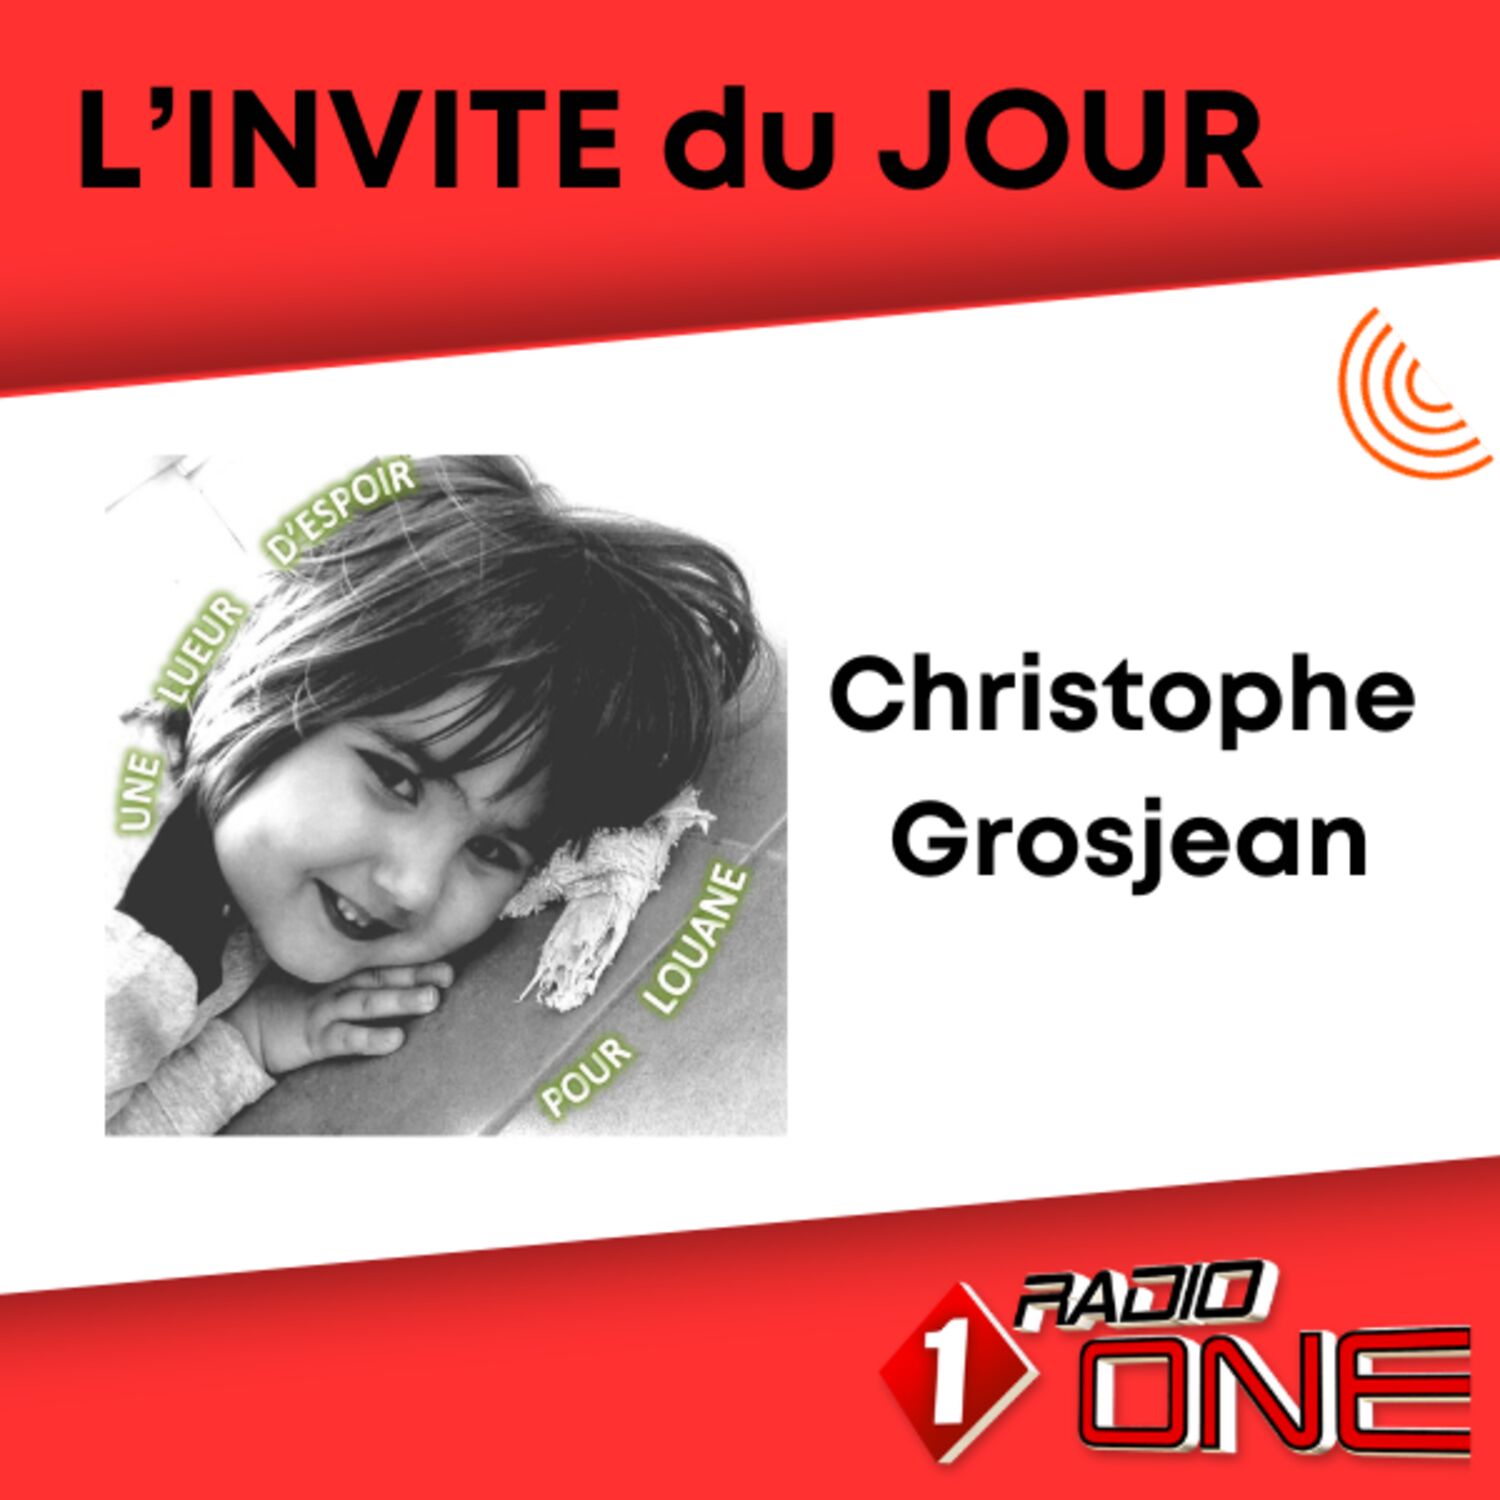 Christophe Grosjean - Une lueur d'espoir pour Louane